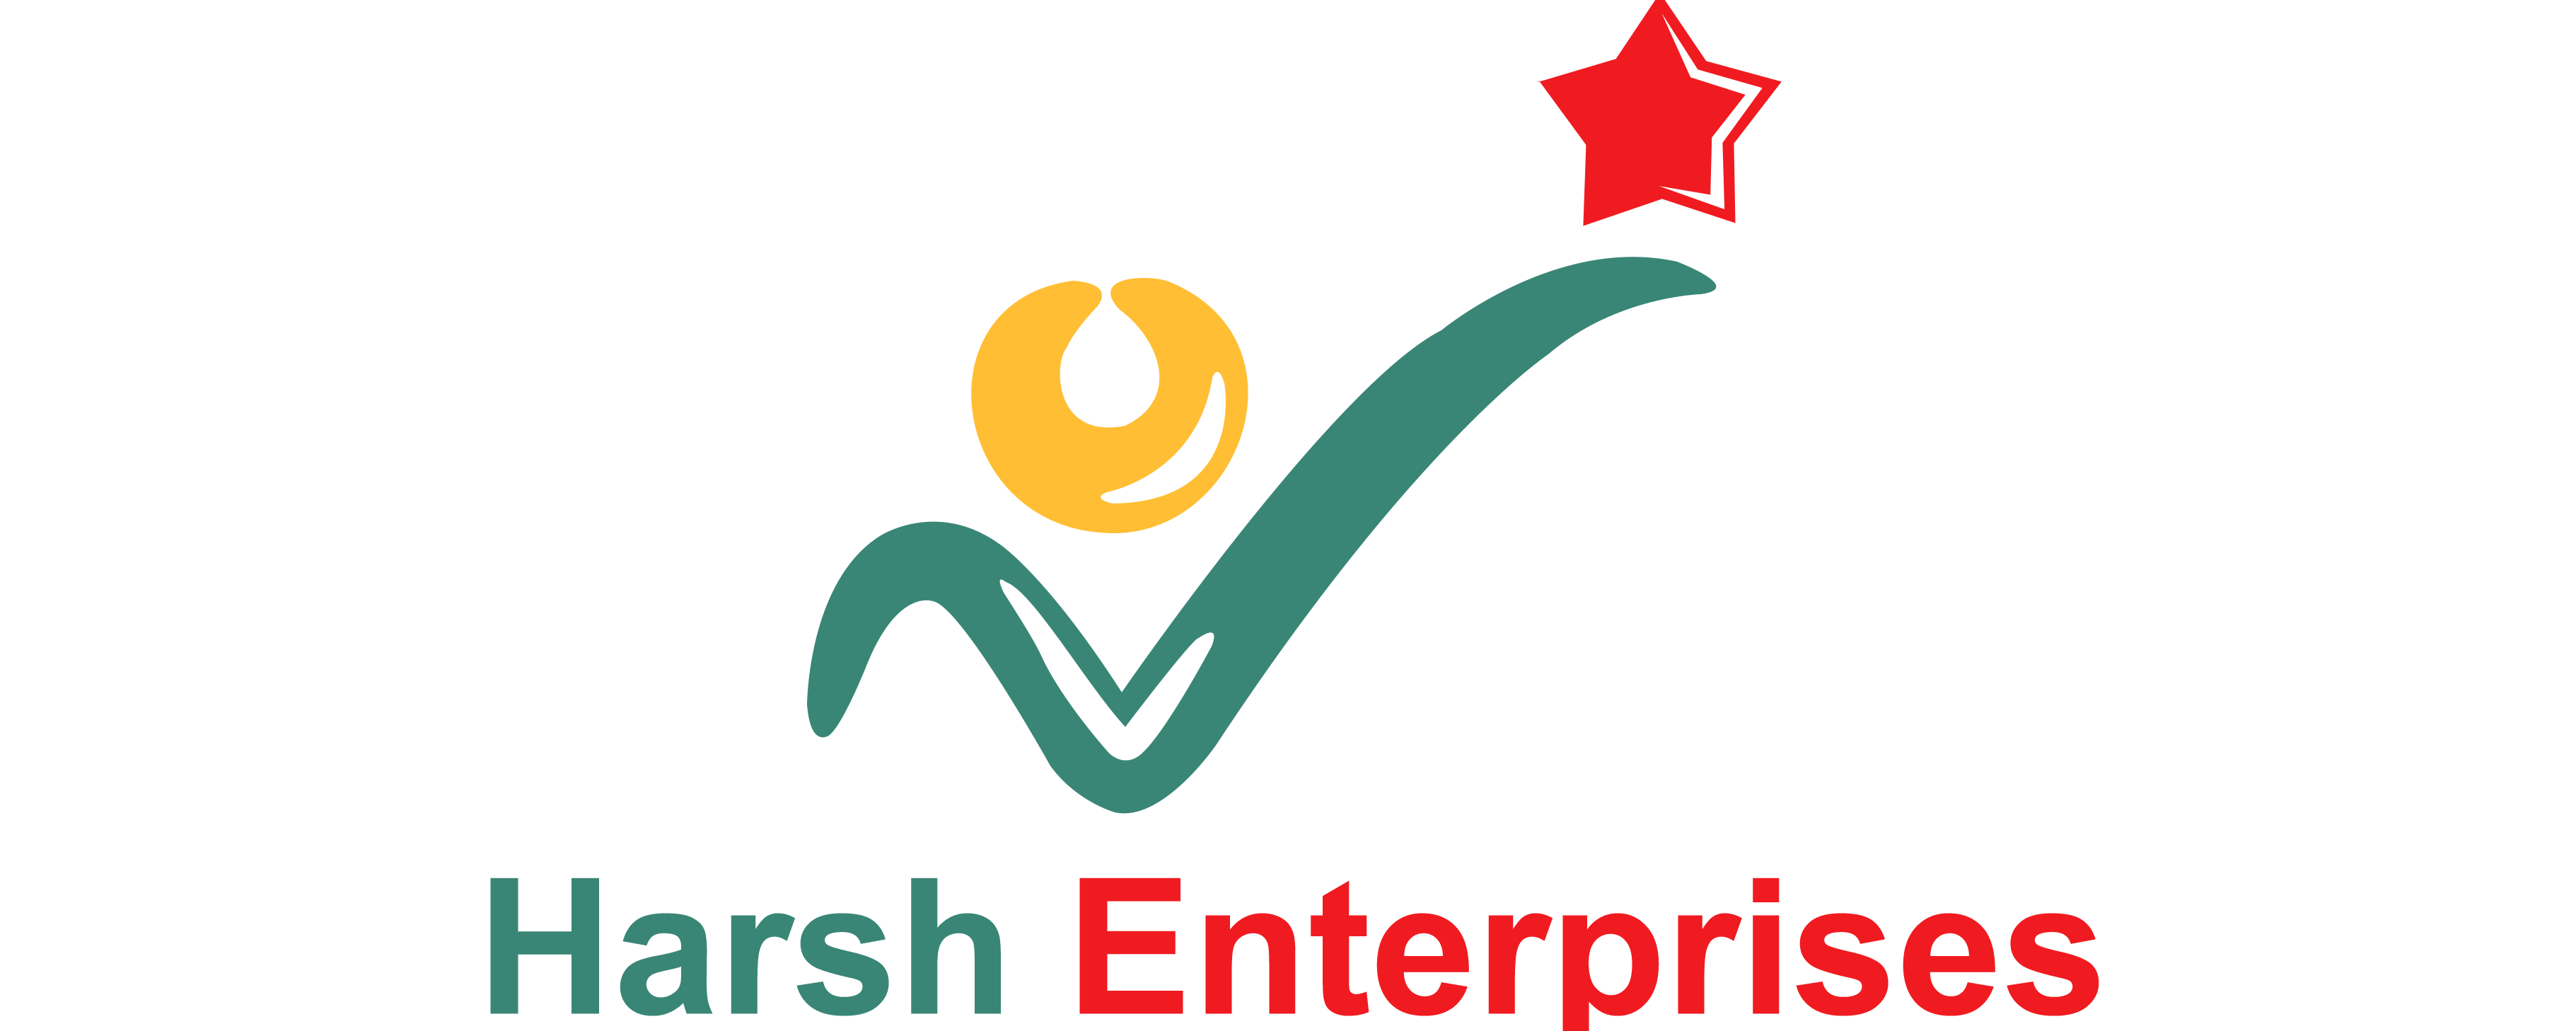 Harsh Enterprises